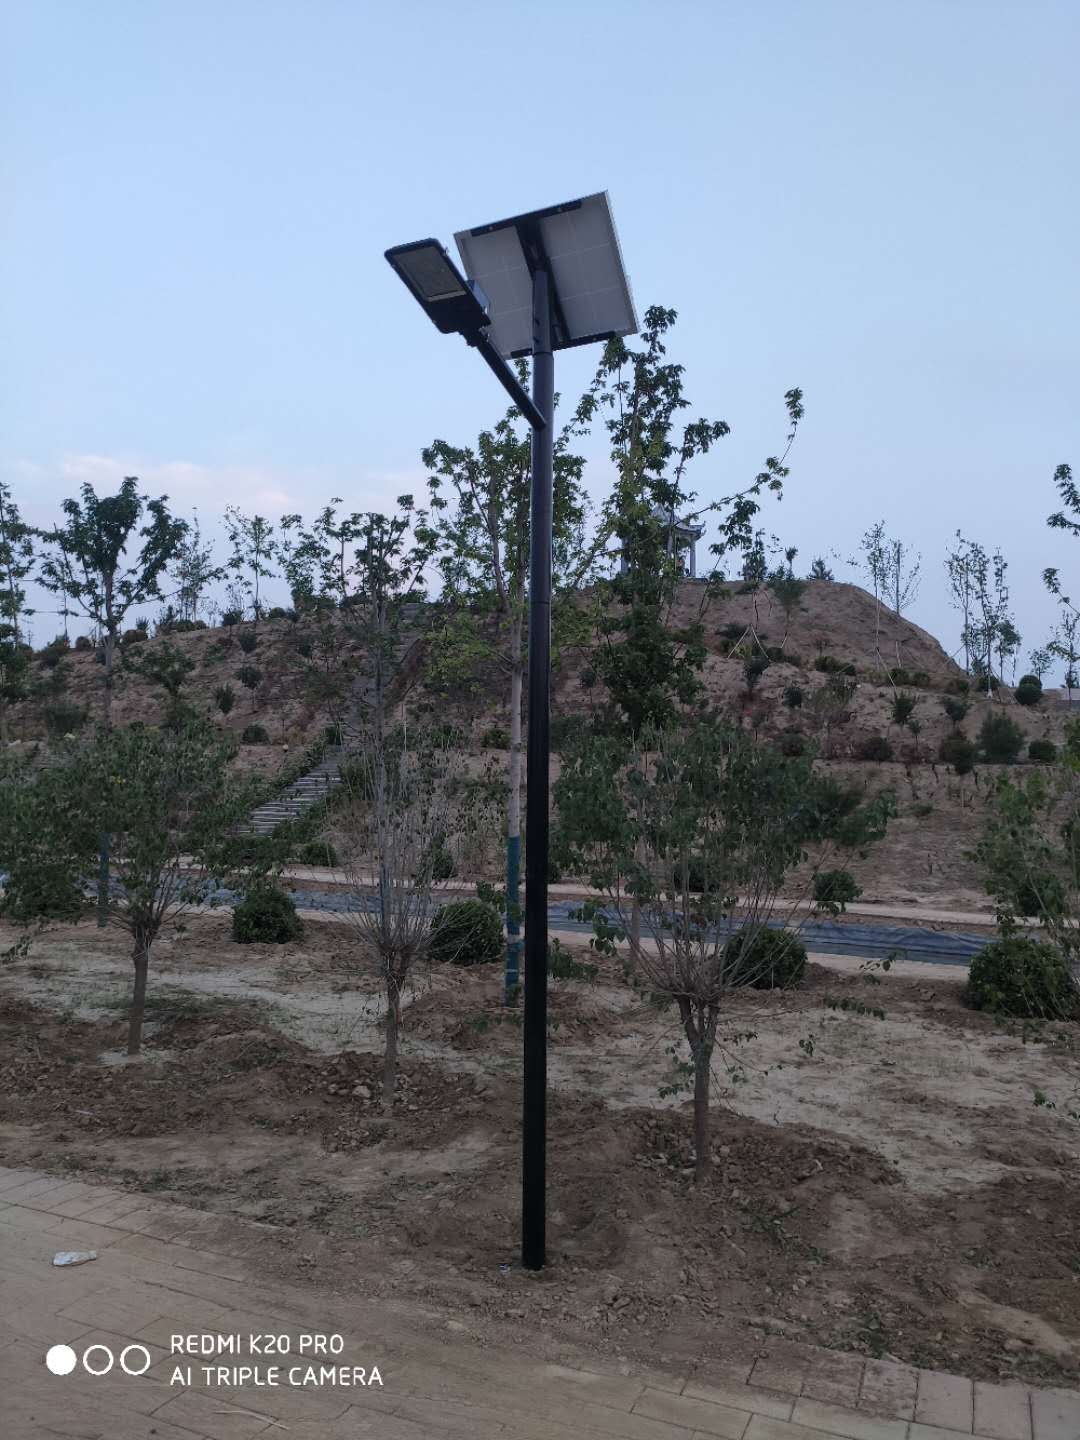 高度4米5公园街道亮化太阳能路灯30瓦光源